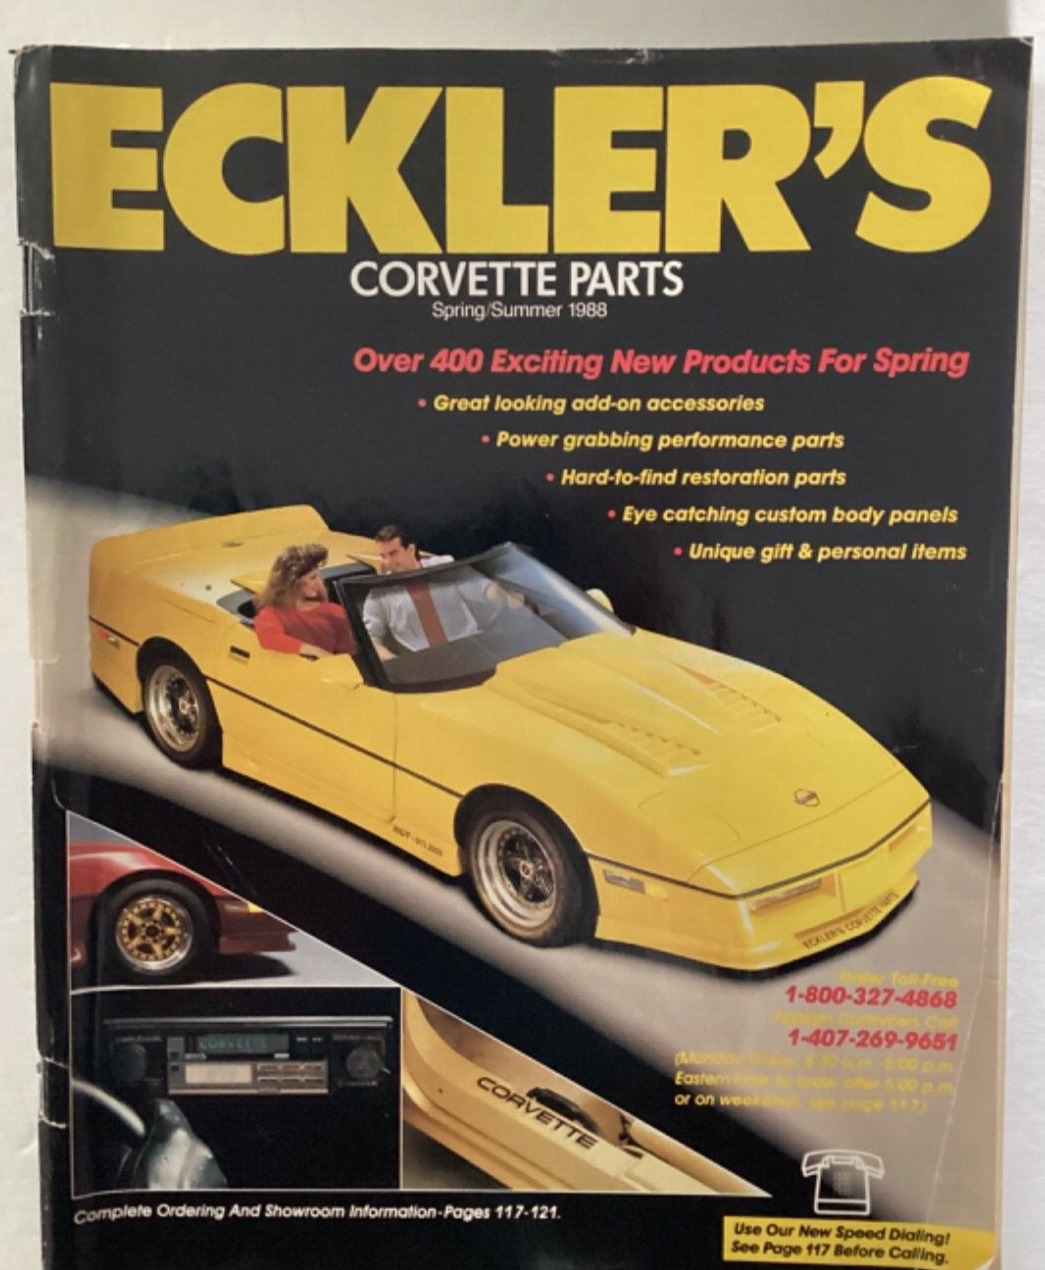 Eckler’s Corvette Parts Spring/Summer 1988 Catalog